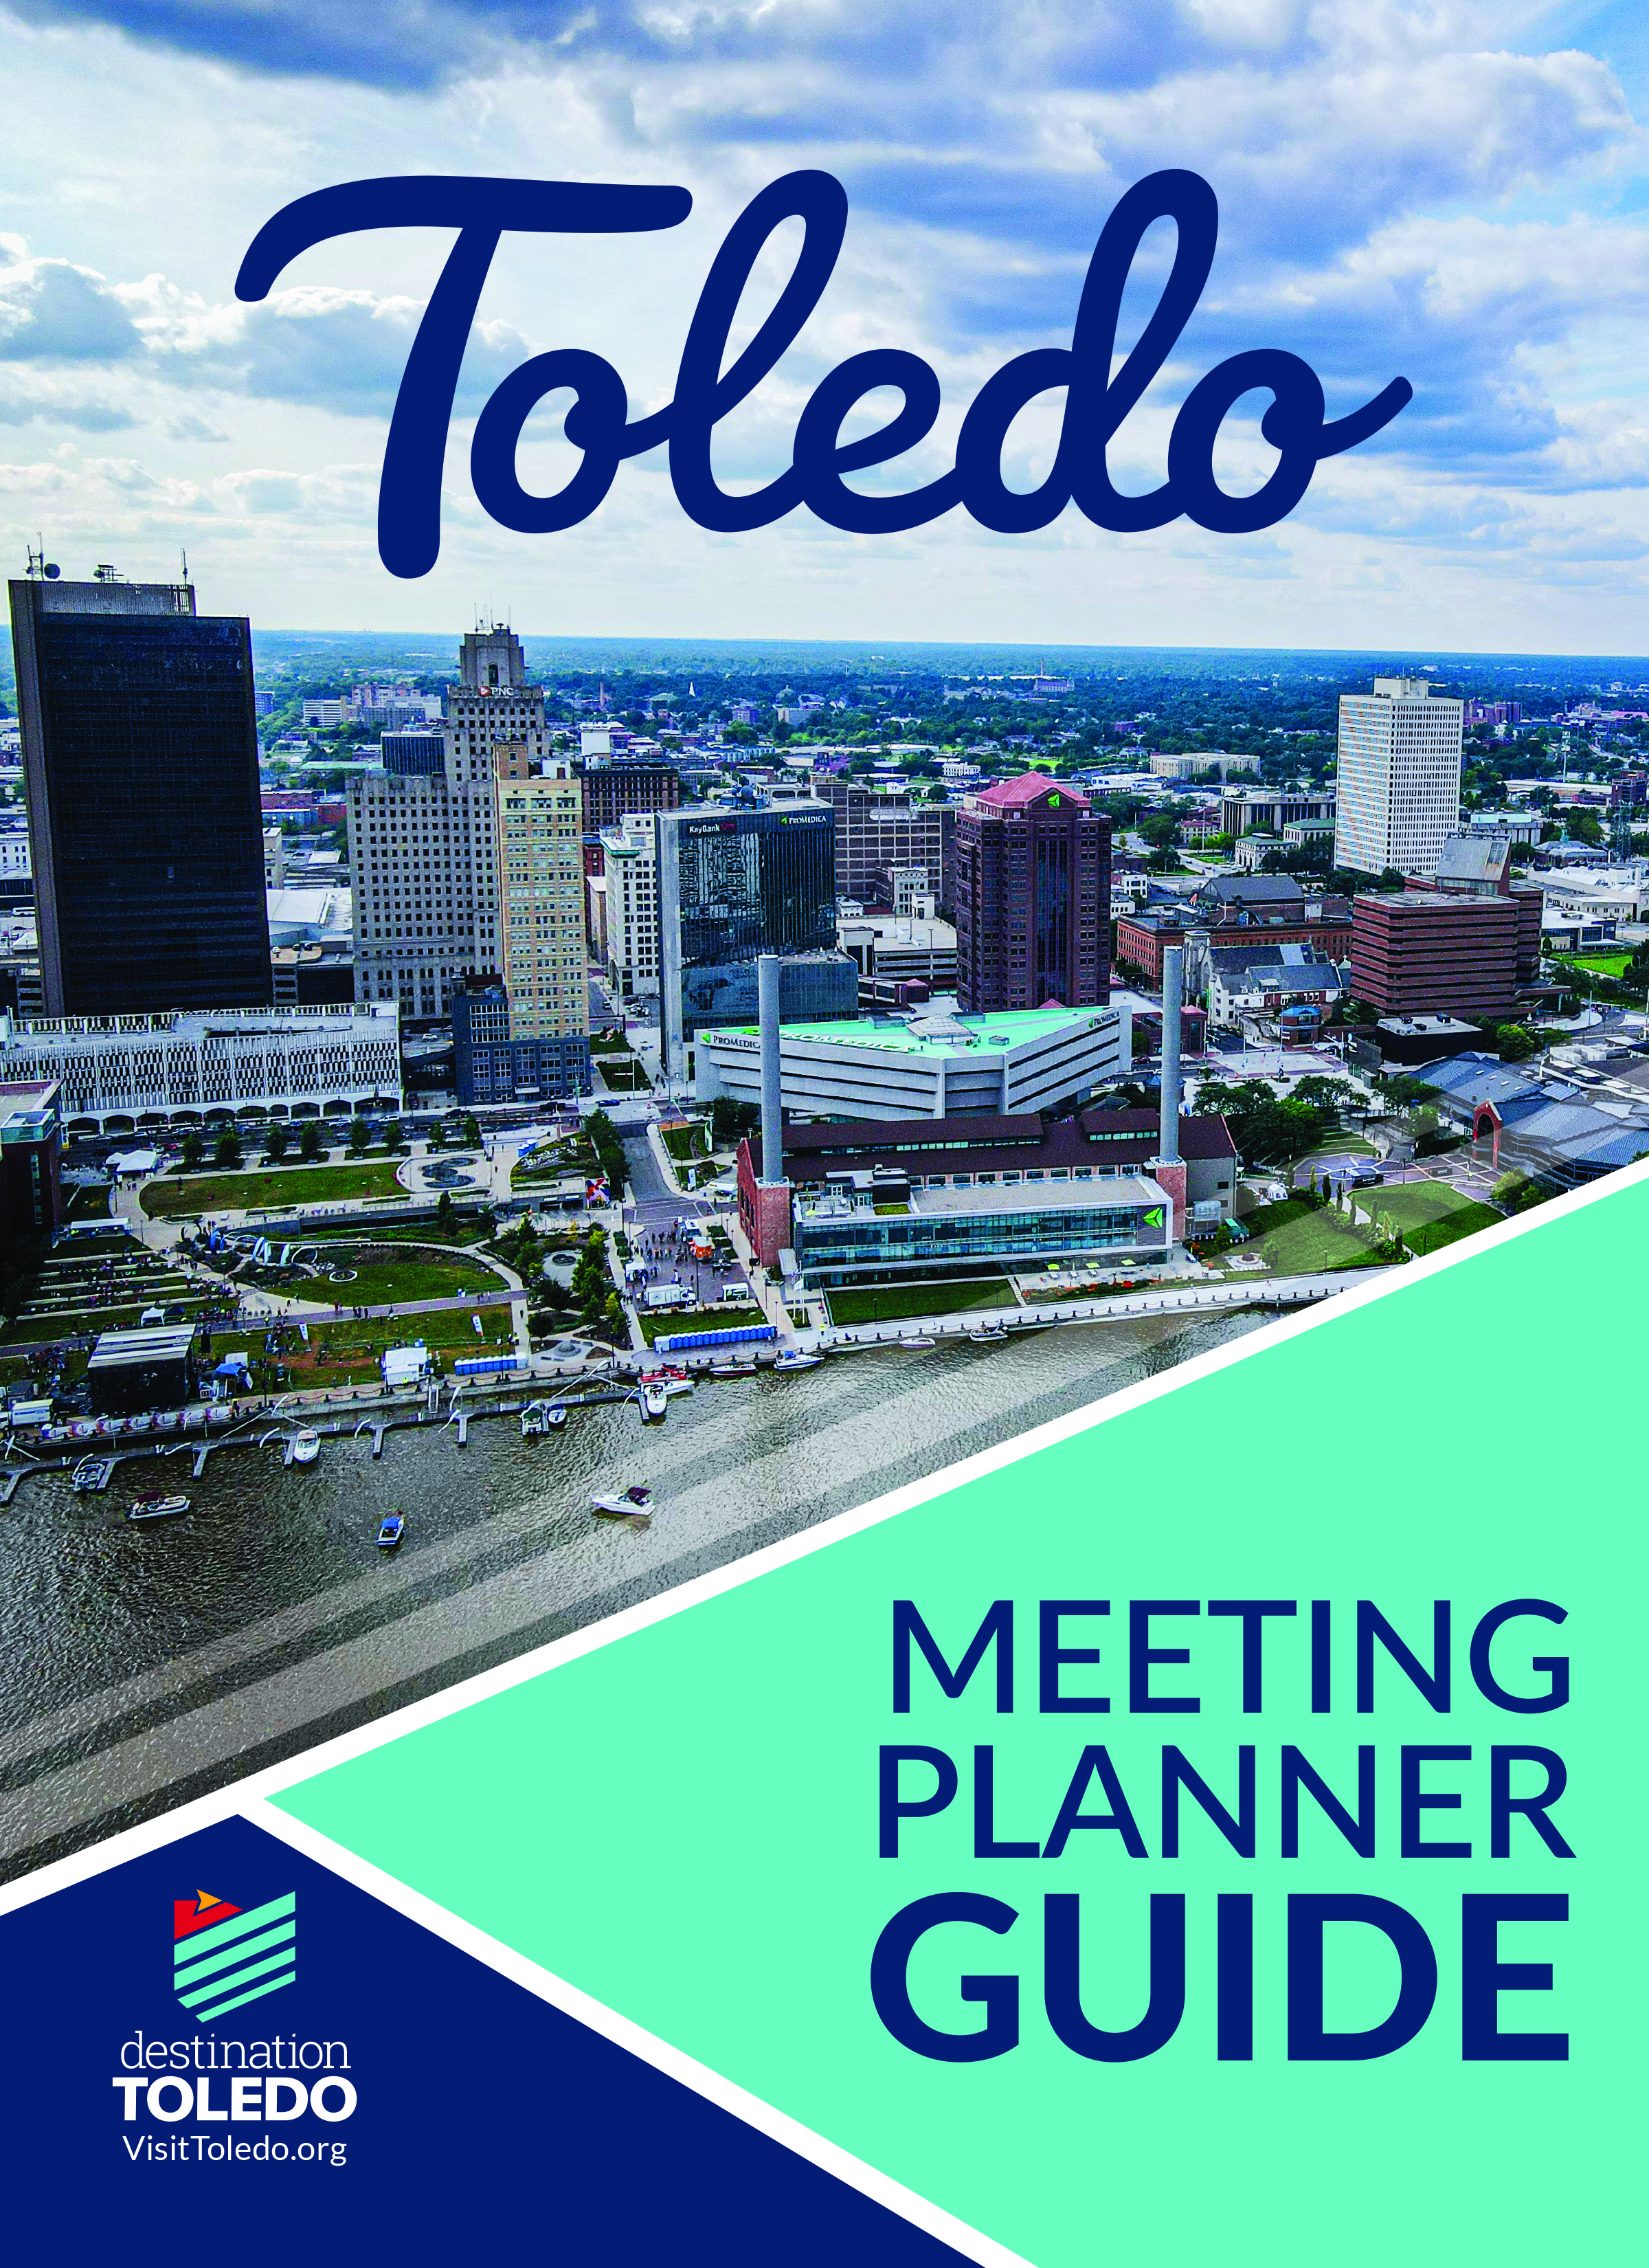 Toledo's Meeting Planner Guide